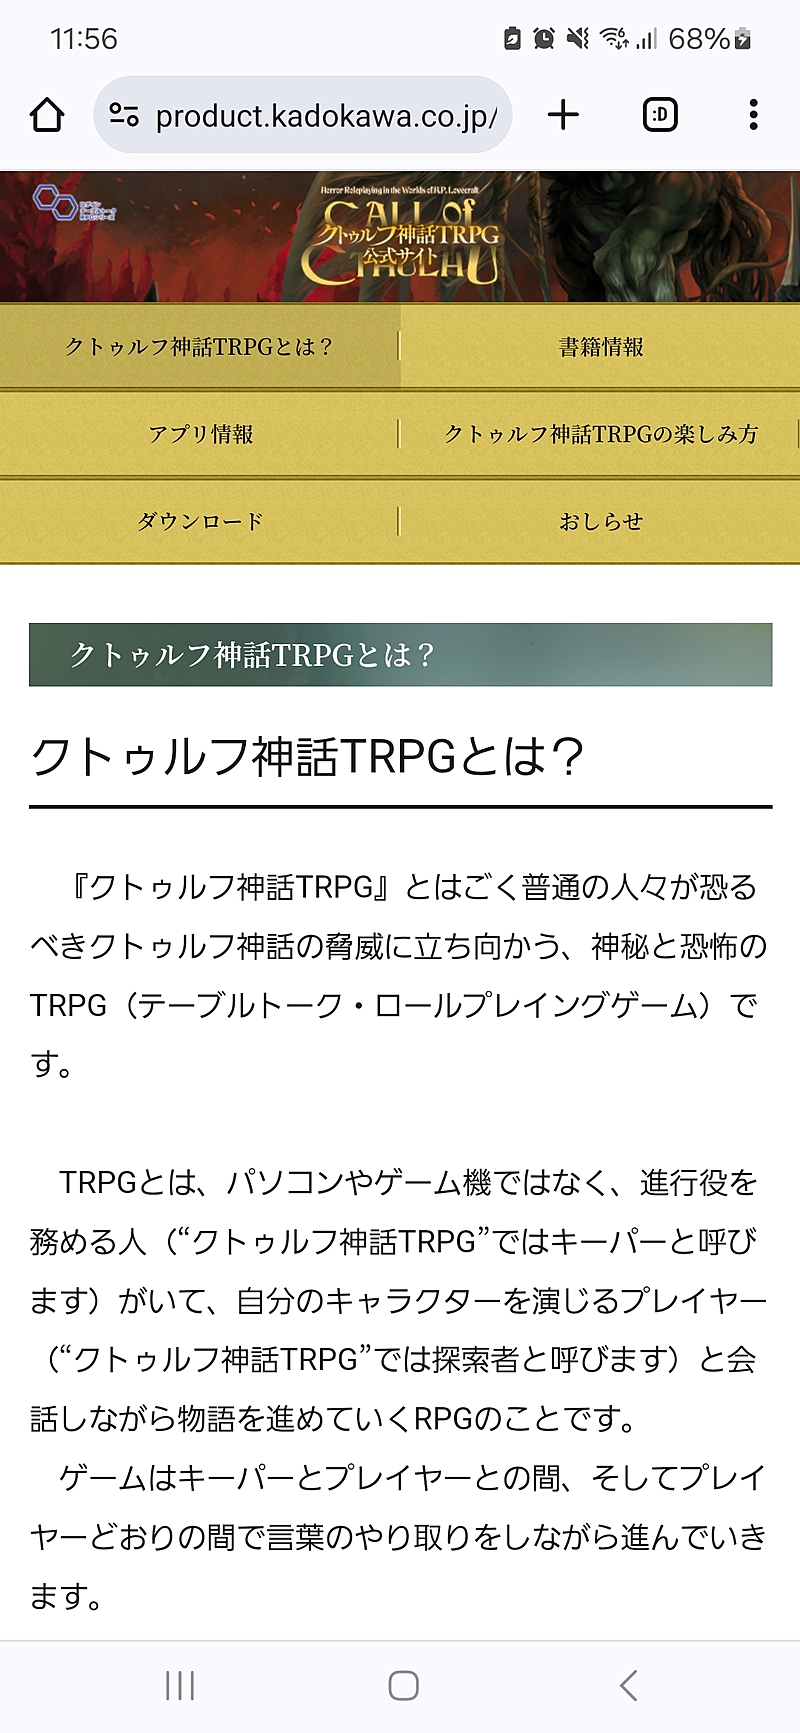 【TRPG】初心者で集まりたい【横浜、東京】